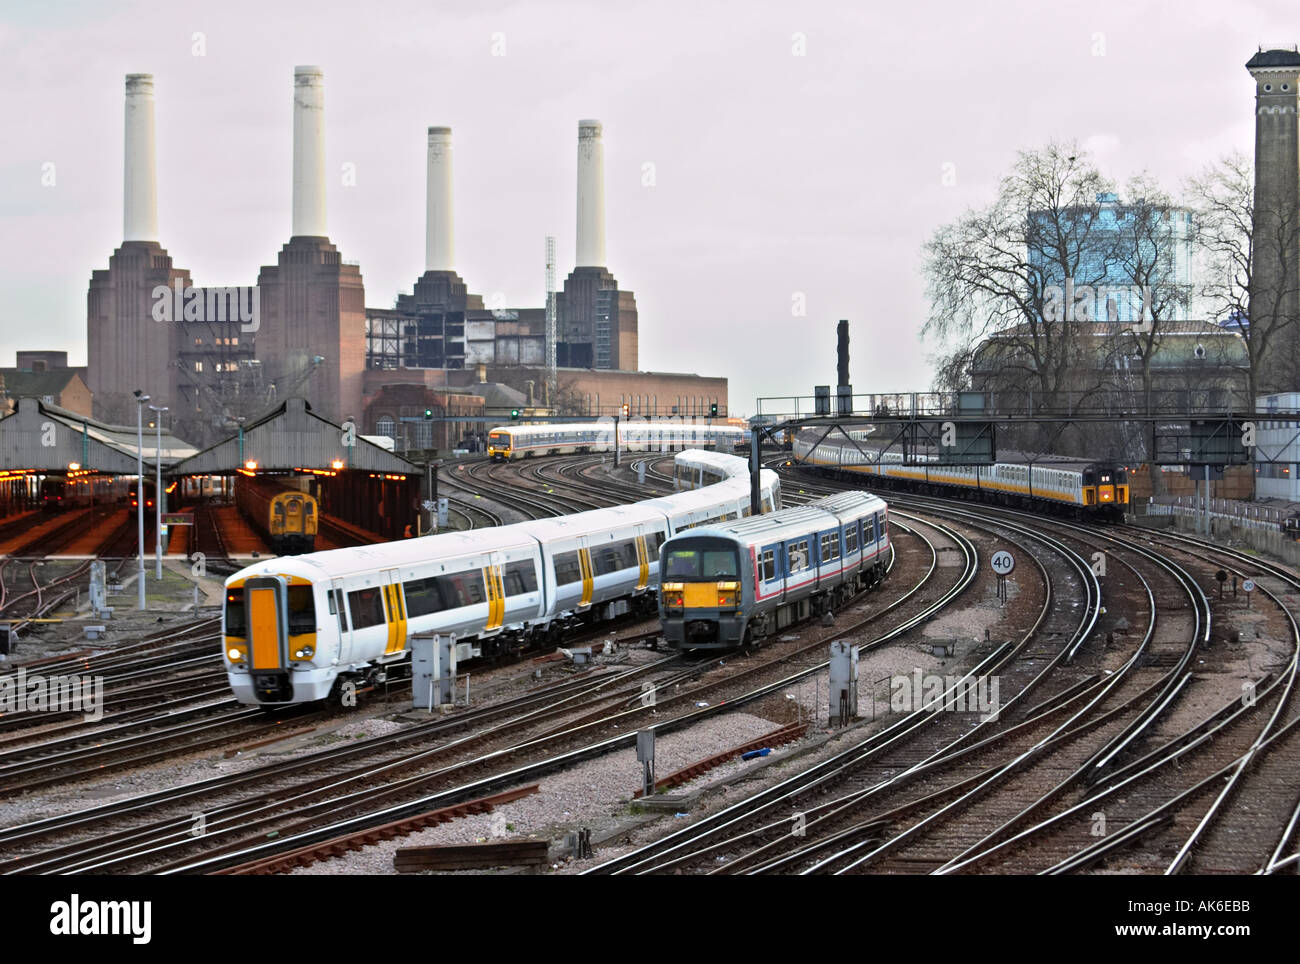 Zug Wagen Spuren Battersea Power Station London UK öffentlichen Verkehrsmitteln pendeln England Großbritannien Vereinigtes Königreich uk Schiene Railwa Stockfoto